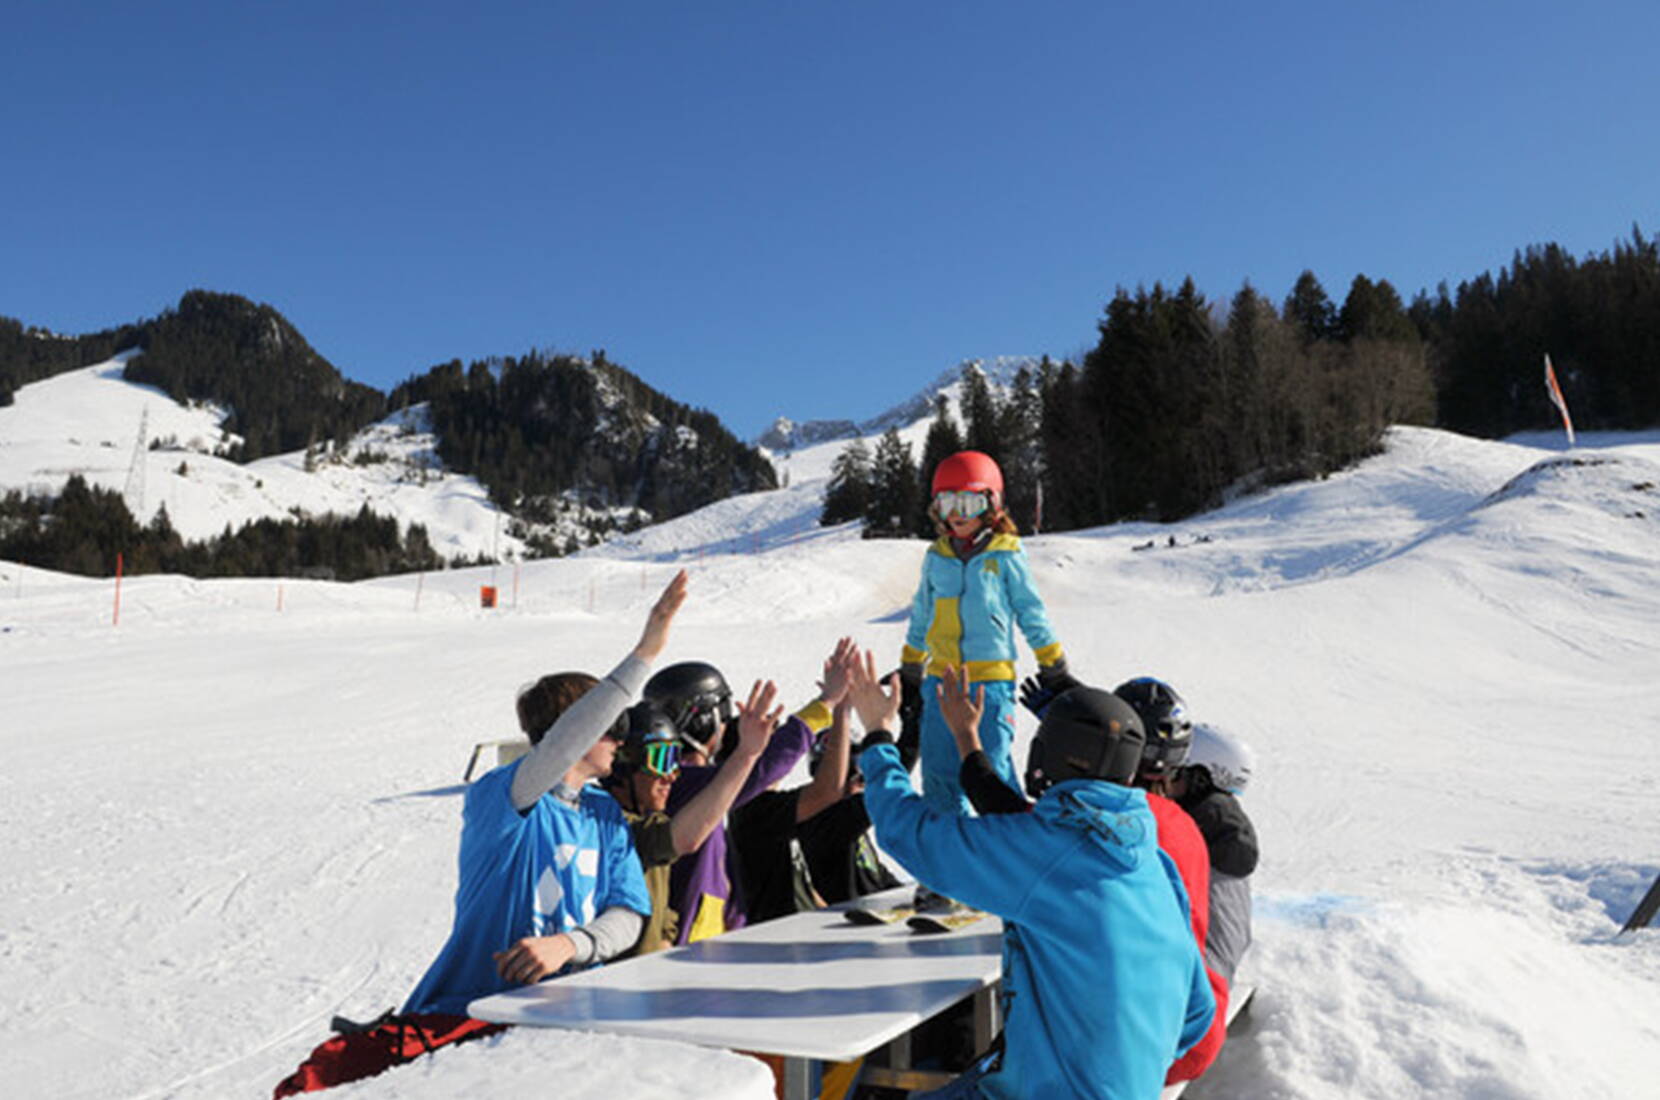 Excursion en famille au Kaisereggbahnen Schwarzsee. LA destination hivernale dans les Alpes fribourgeoises! Petits et grands arrivent facilement au Lac Noir, où le télésiège mène directement au domaine skiable depuis le parking de la Gypsera.